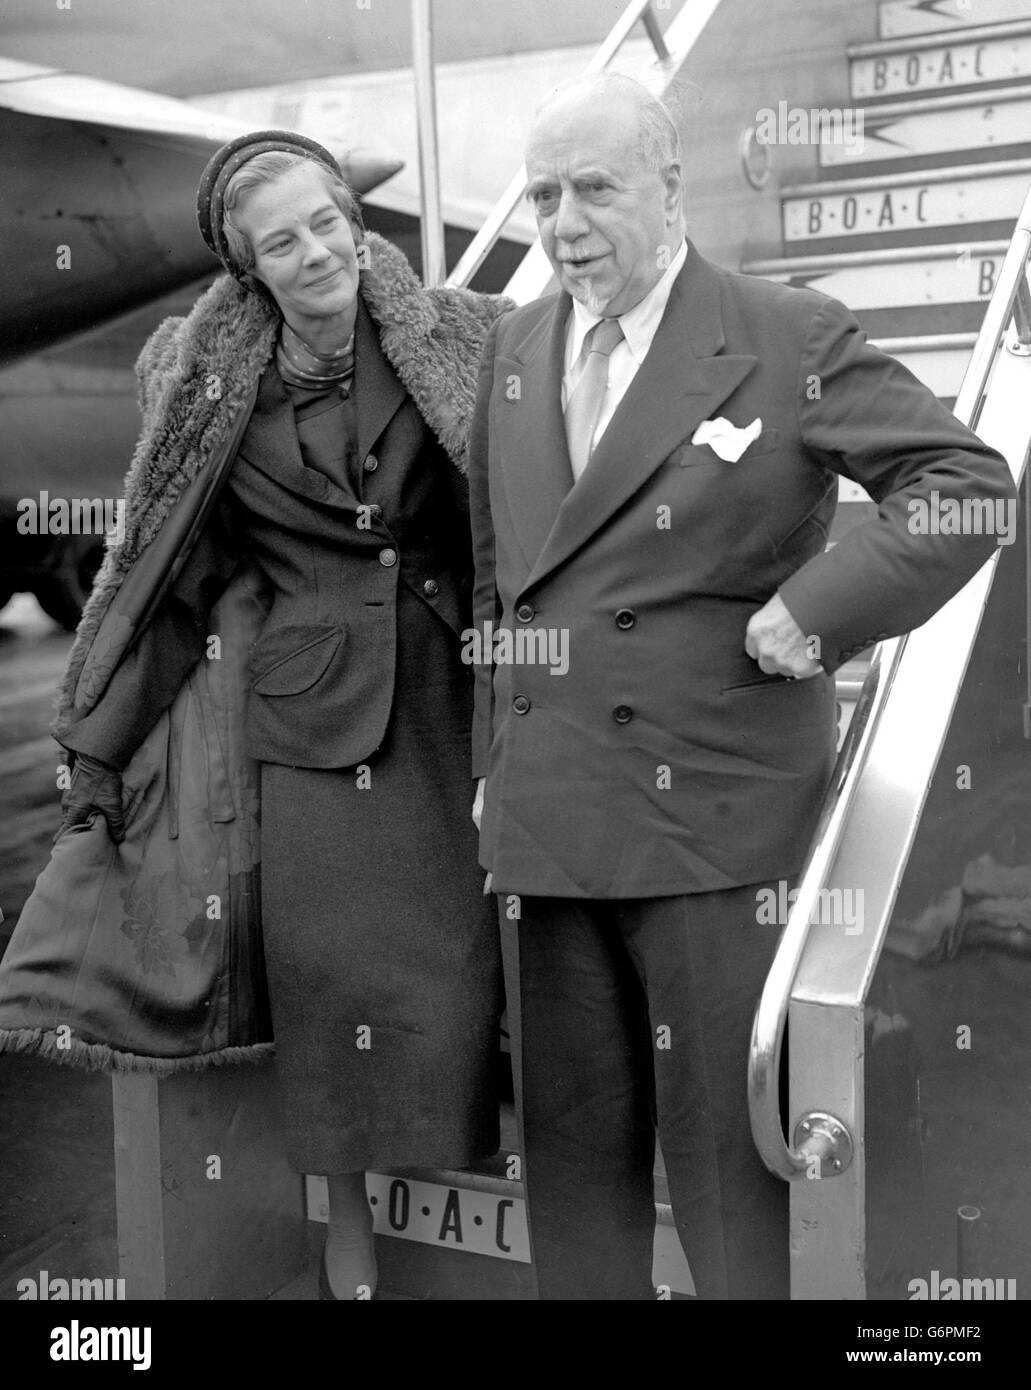 Sir Thomas et Lady Beecham arrivent à l'aéroport de Londres par le vol BOAC Monarch de New York. Ils ont été aux États-Unis pendant six semaines de vacances que Sir Thomas a interrompu à deux reprises pour donner des concerts, l'un à Balitmore et l'autre à Washington. Banque D'Images